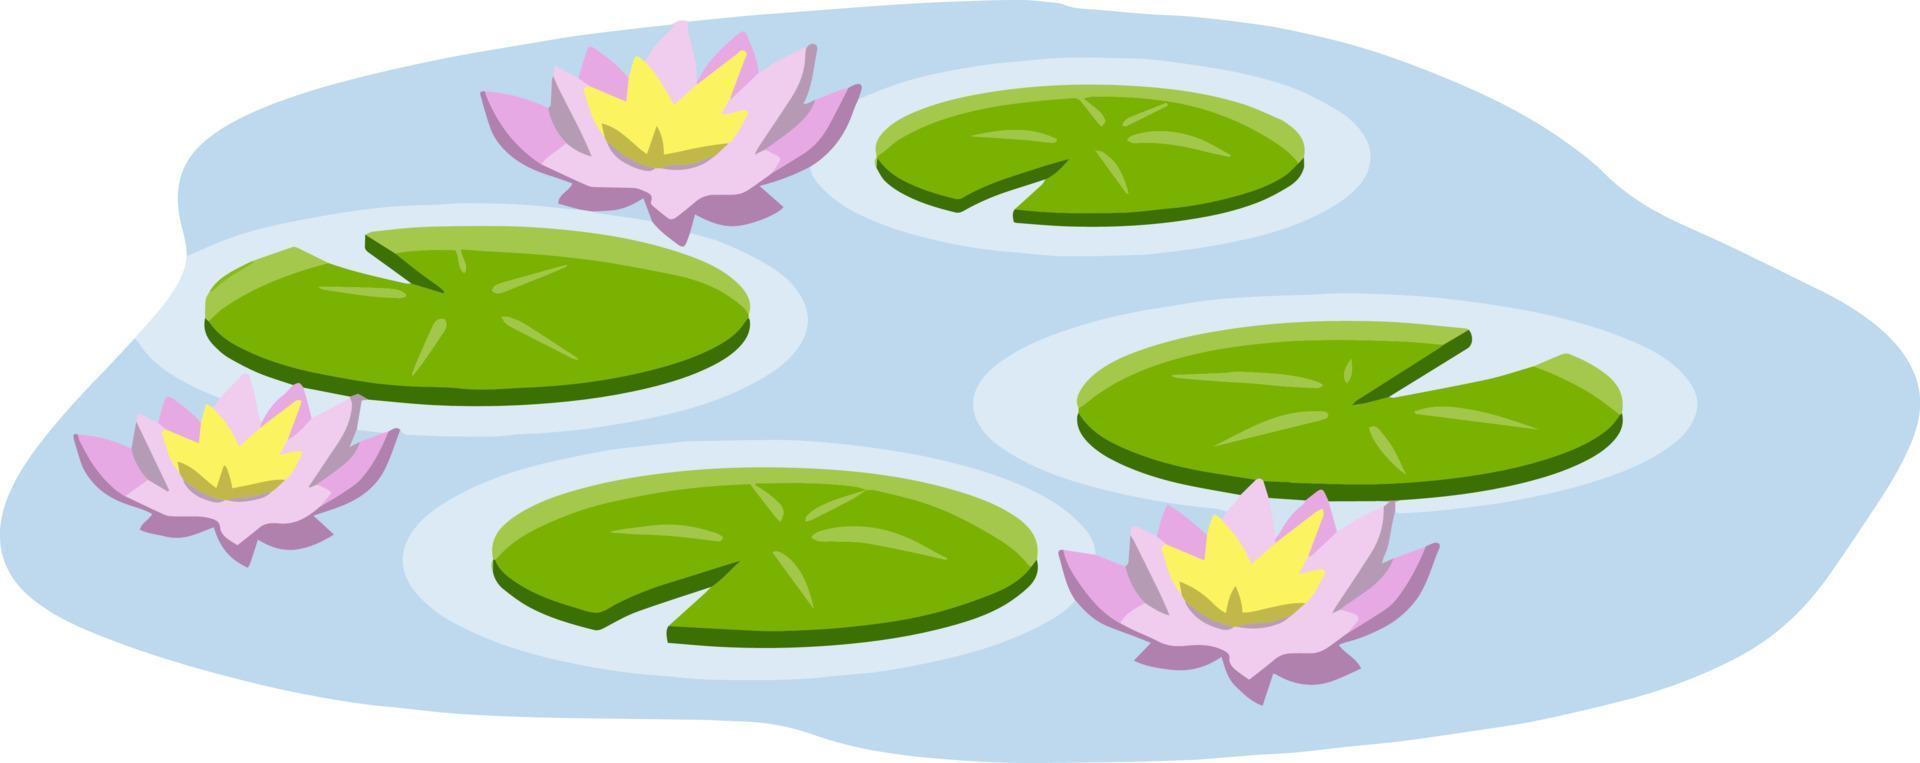 nenuphars. vatten lilja. växt på sjö och reservoar. stor grön blad. element av natur, skog och vild liv. träsk rosa blommor. platt tecknad serie vektor